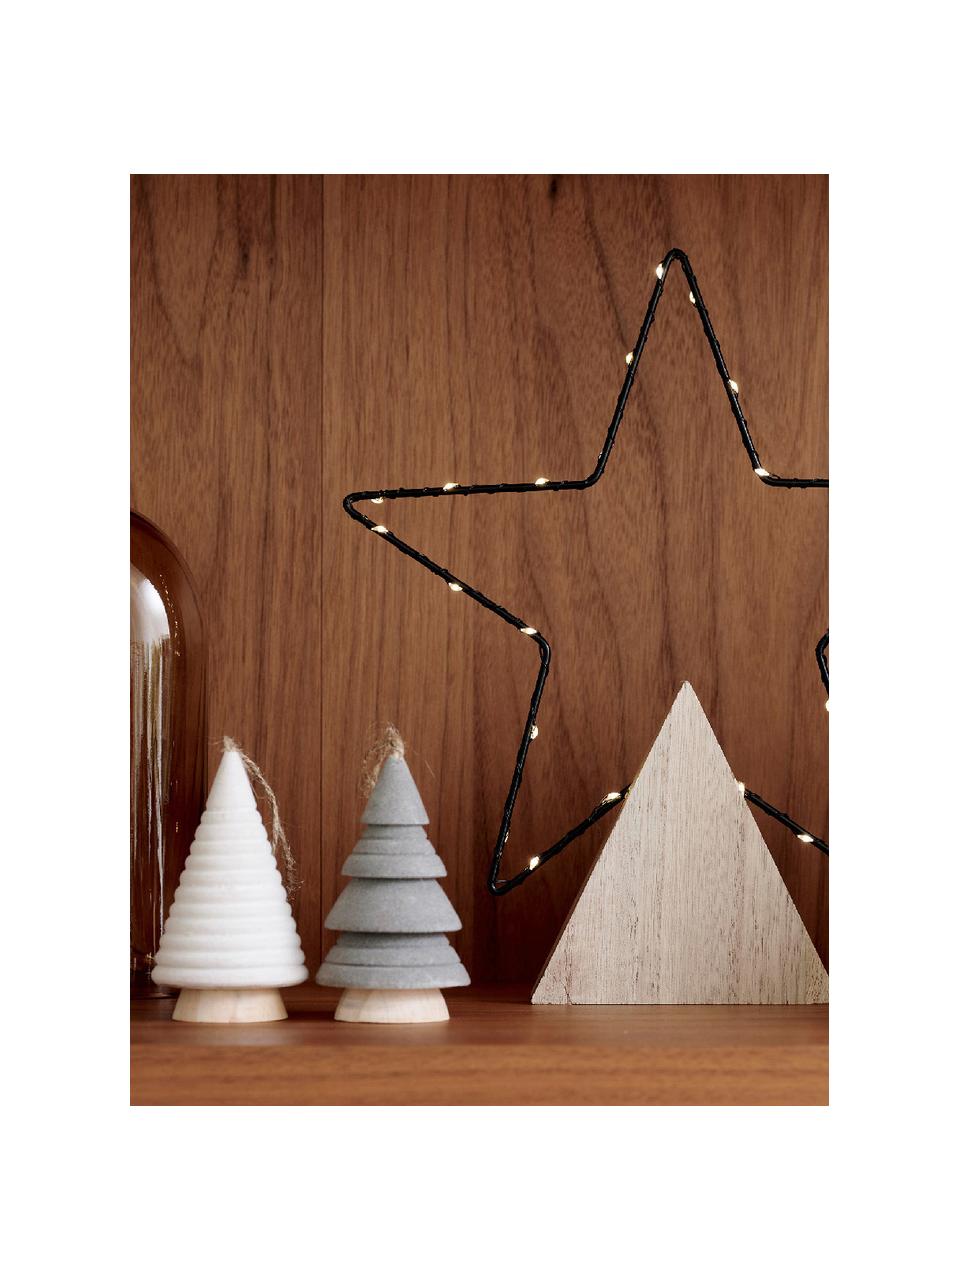 Súprava vianočných ozdôb Maggie, 3 diely, MDF-doska strednej hustoty, Drevo, sivá, hnedá, krémovobiela, Ø 6 x V 10 cm